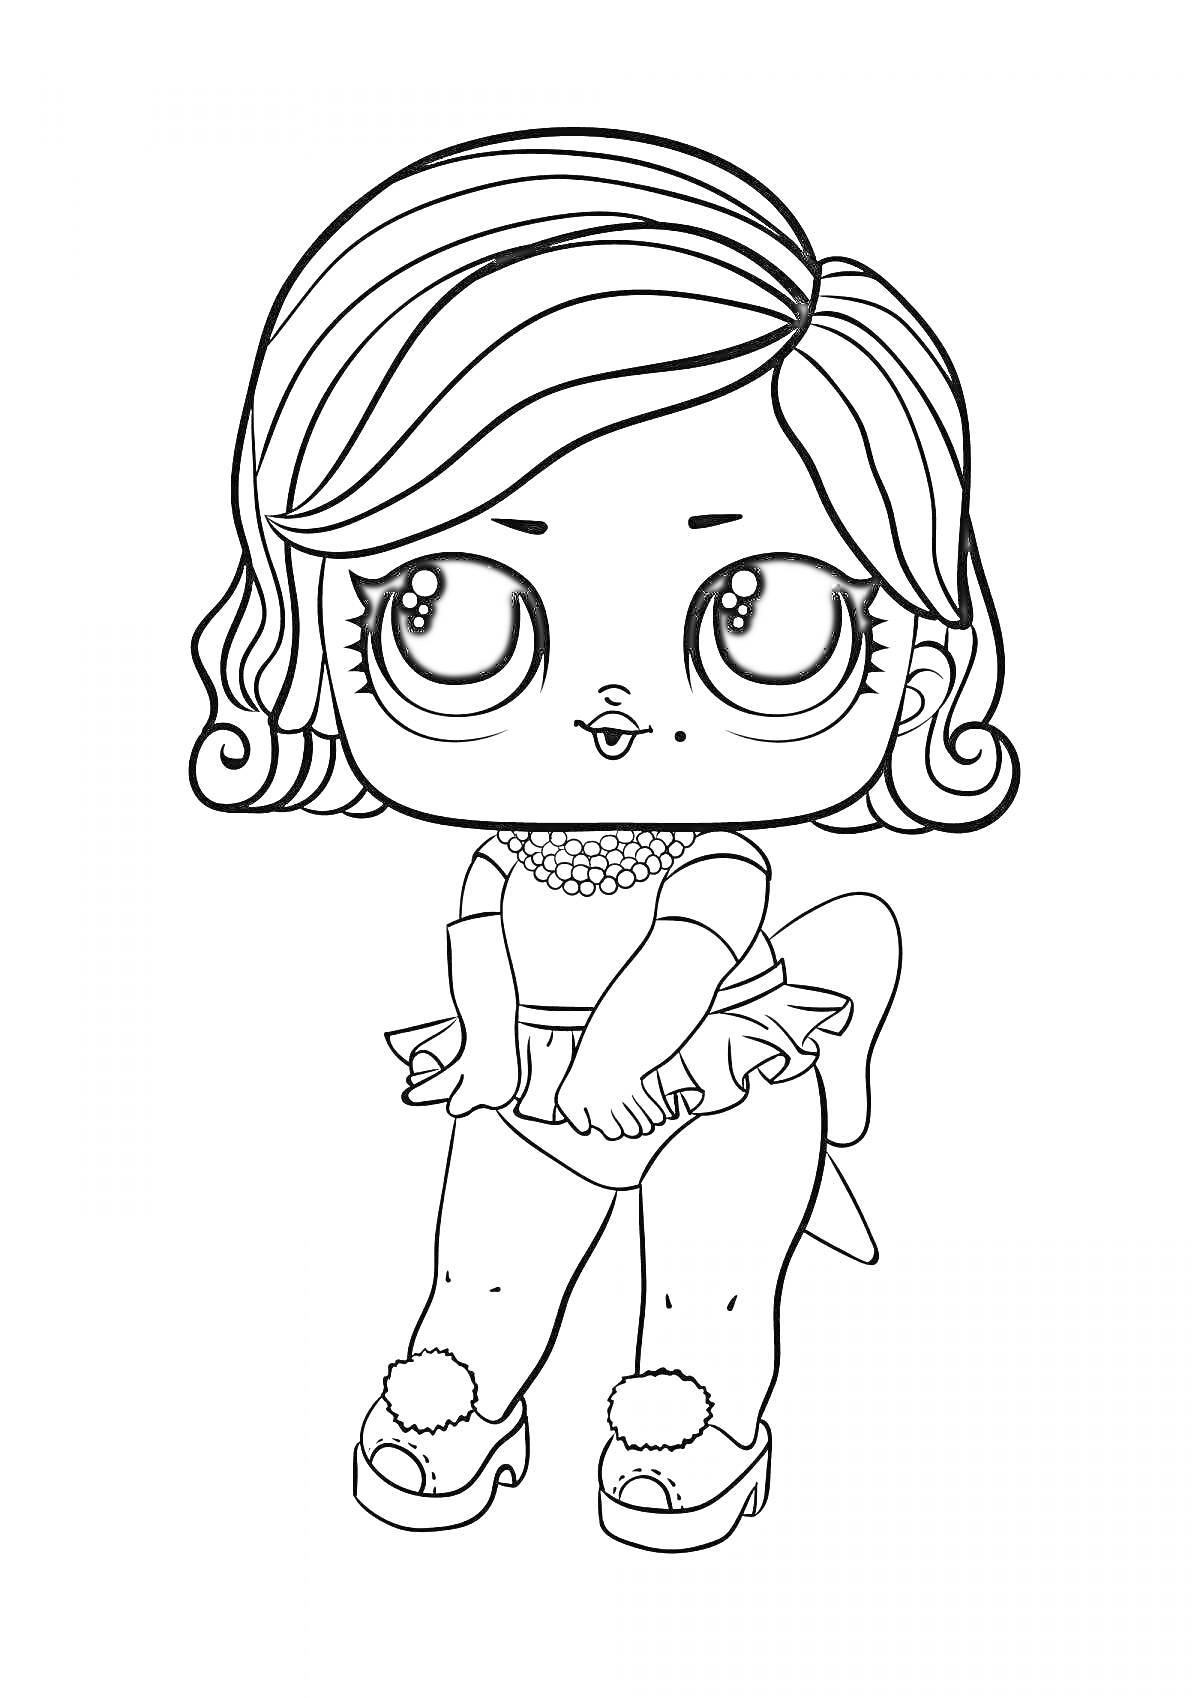 Раскраска ЛОЛ кукла с волнистыми волосами, крупными глазами, в платье с бантом, обувь на каблуках с помпонами